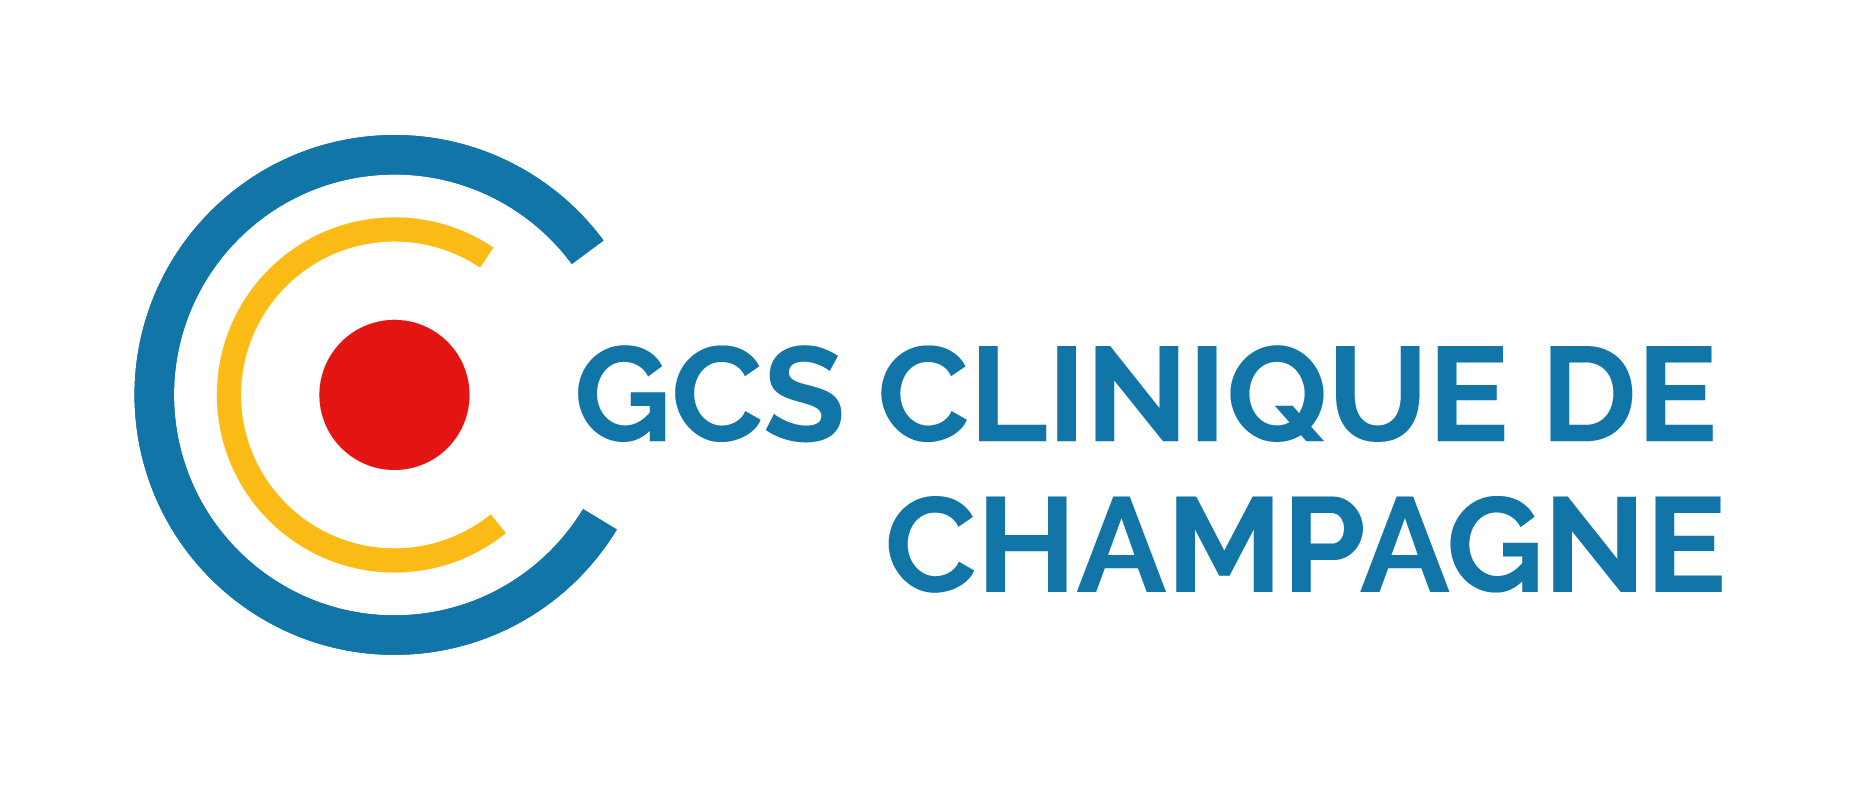 Logo GCS clinique de champagne